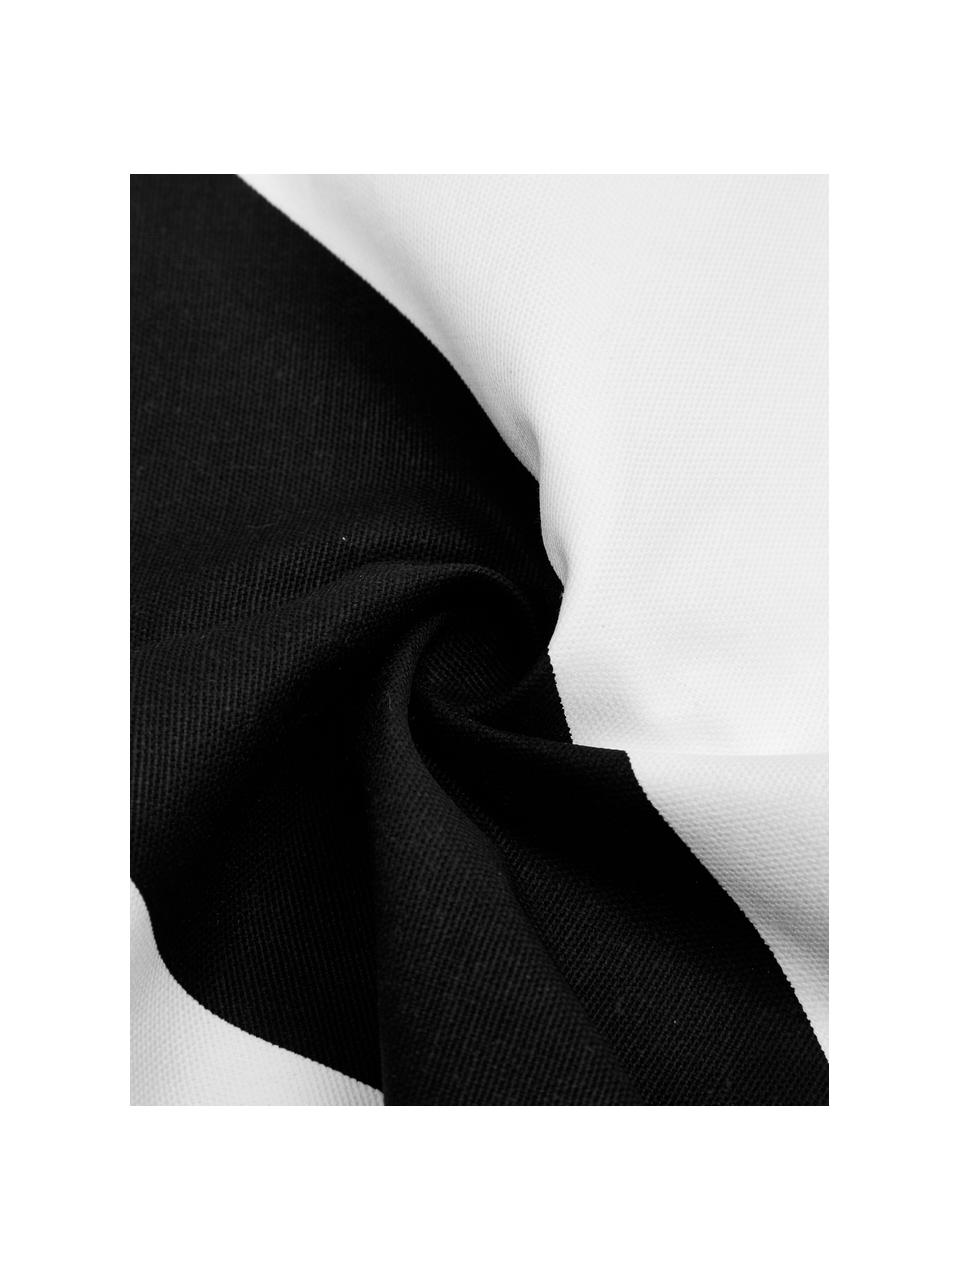 Housse de coussin rectangulaire blanc noir Ren, 100 % coton, Blanc, noir, larg. 30 x long. 50 cm